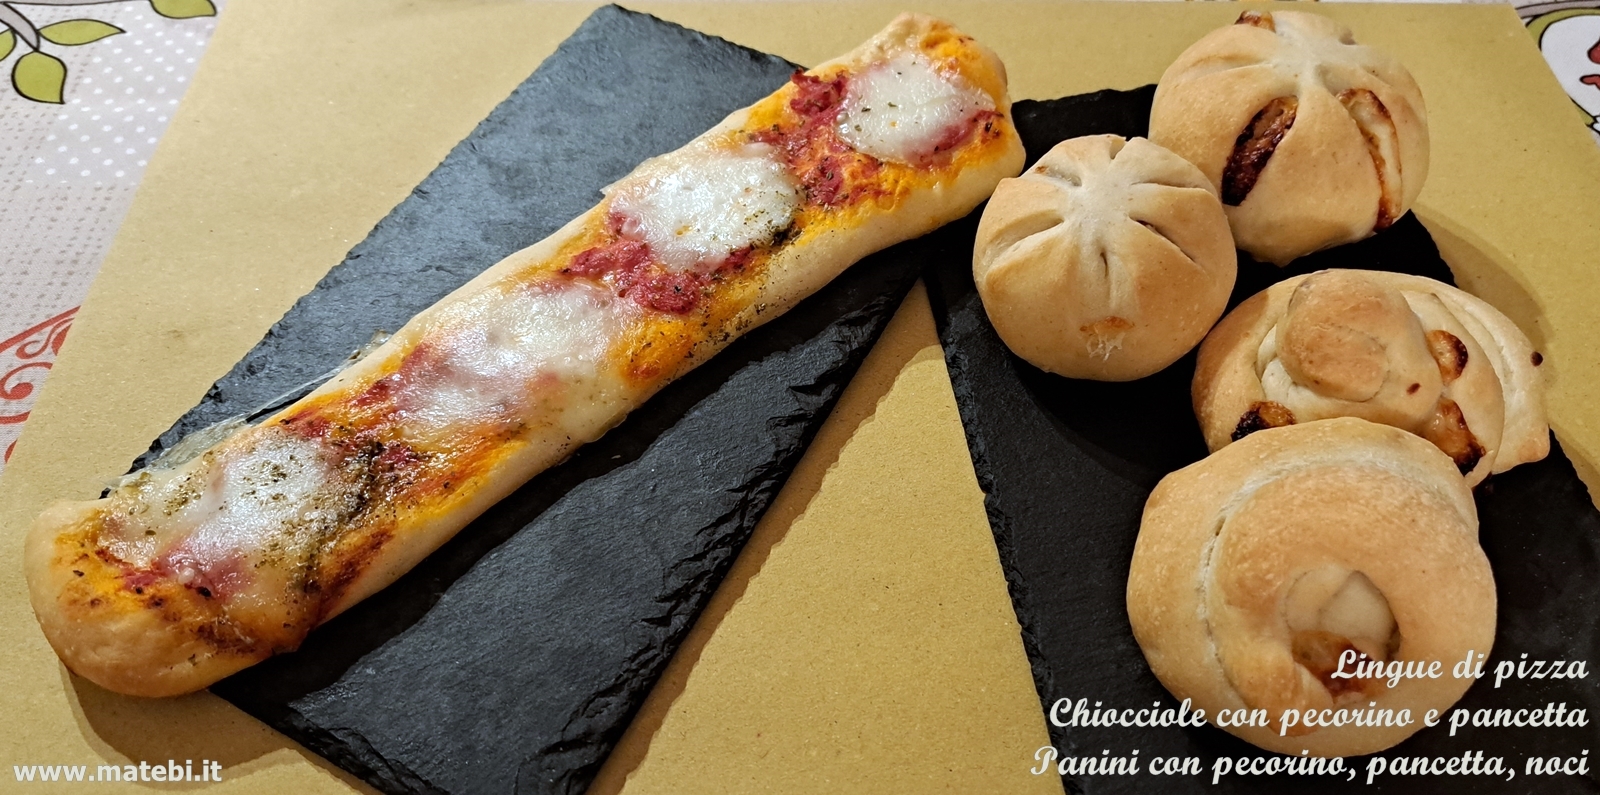 Lingue di pizza Chiocciole con pecorino e pancetta Panini con pecorino, pancetta, noci